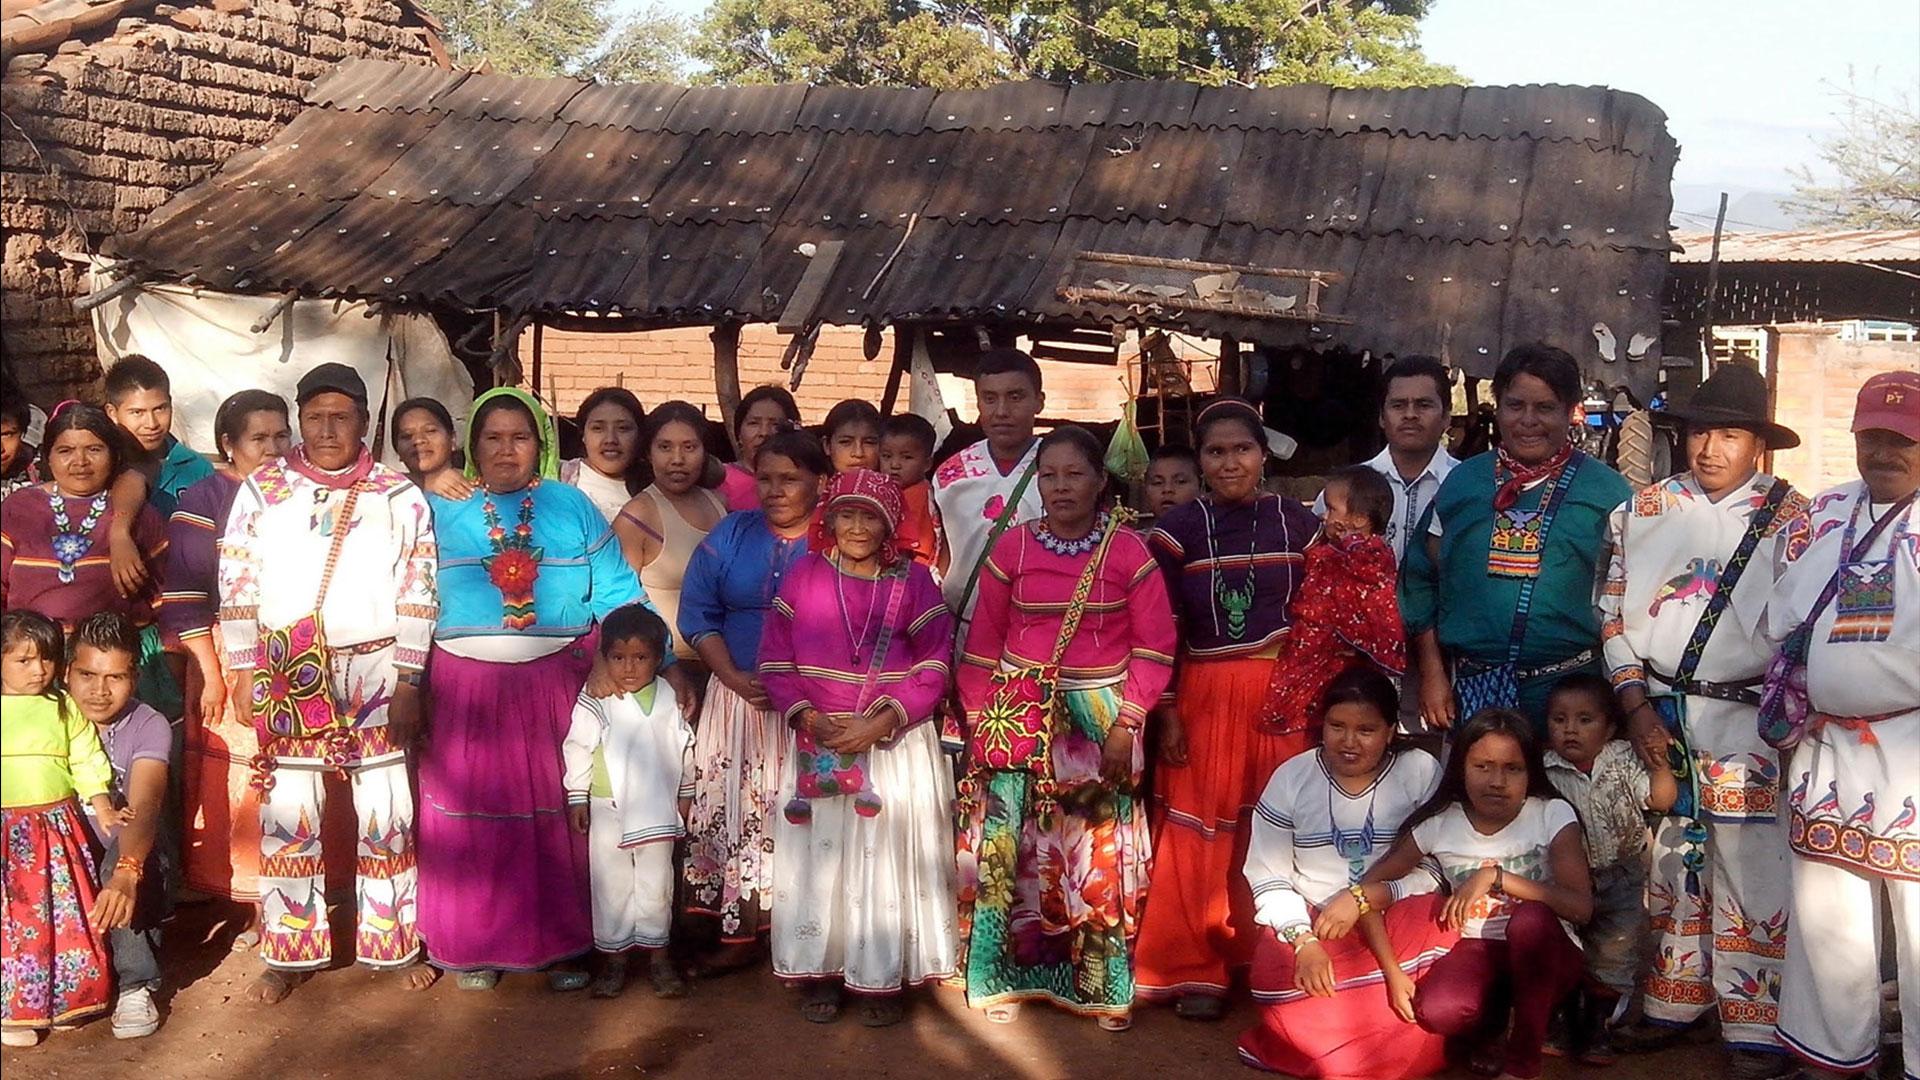 La comunidad Huichol es beneficiada con proyecto misionero